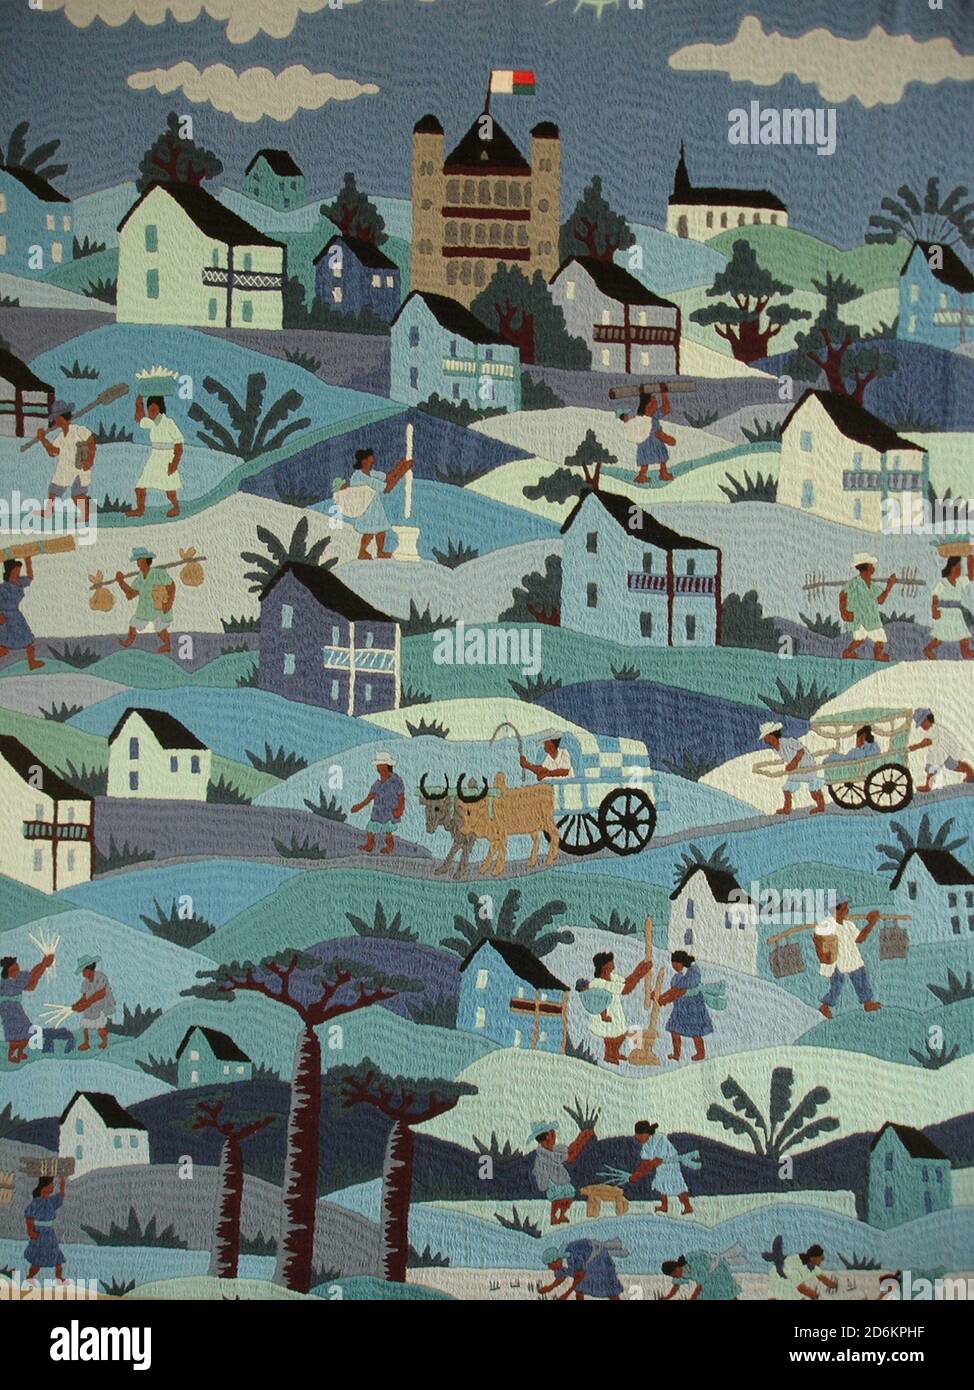 La vie rurale à Madagascar a été montrée dans des détails exquis sur une tapisserie cousue. Banque D'Images